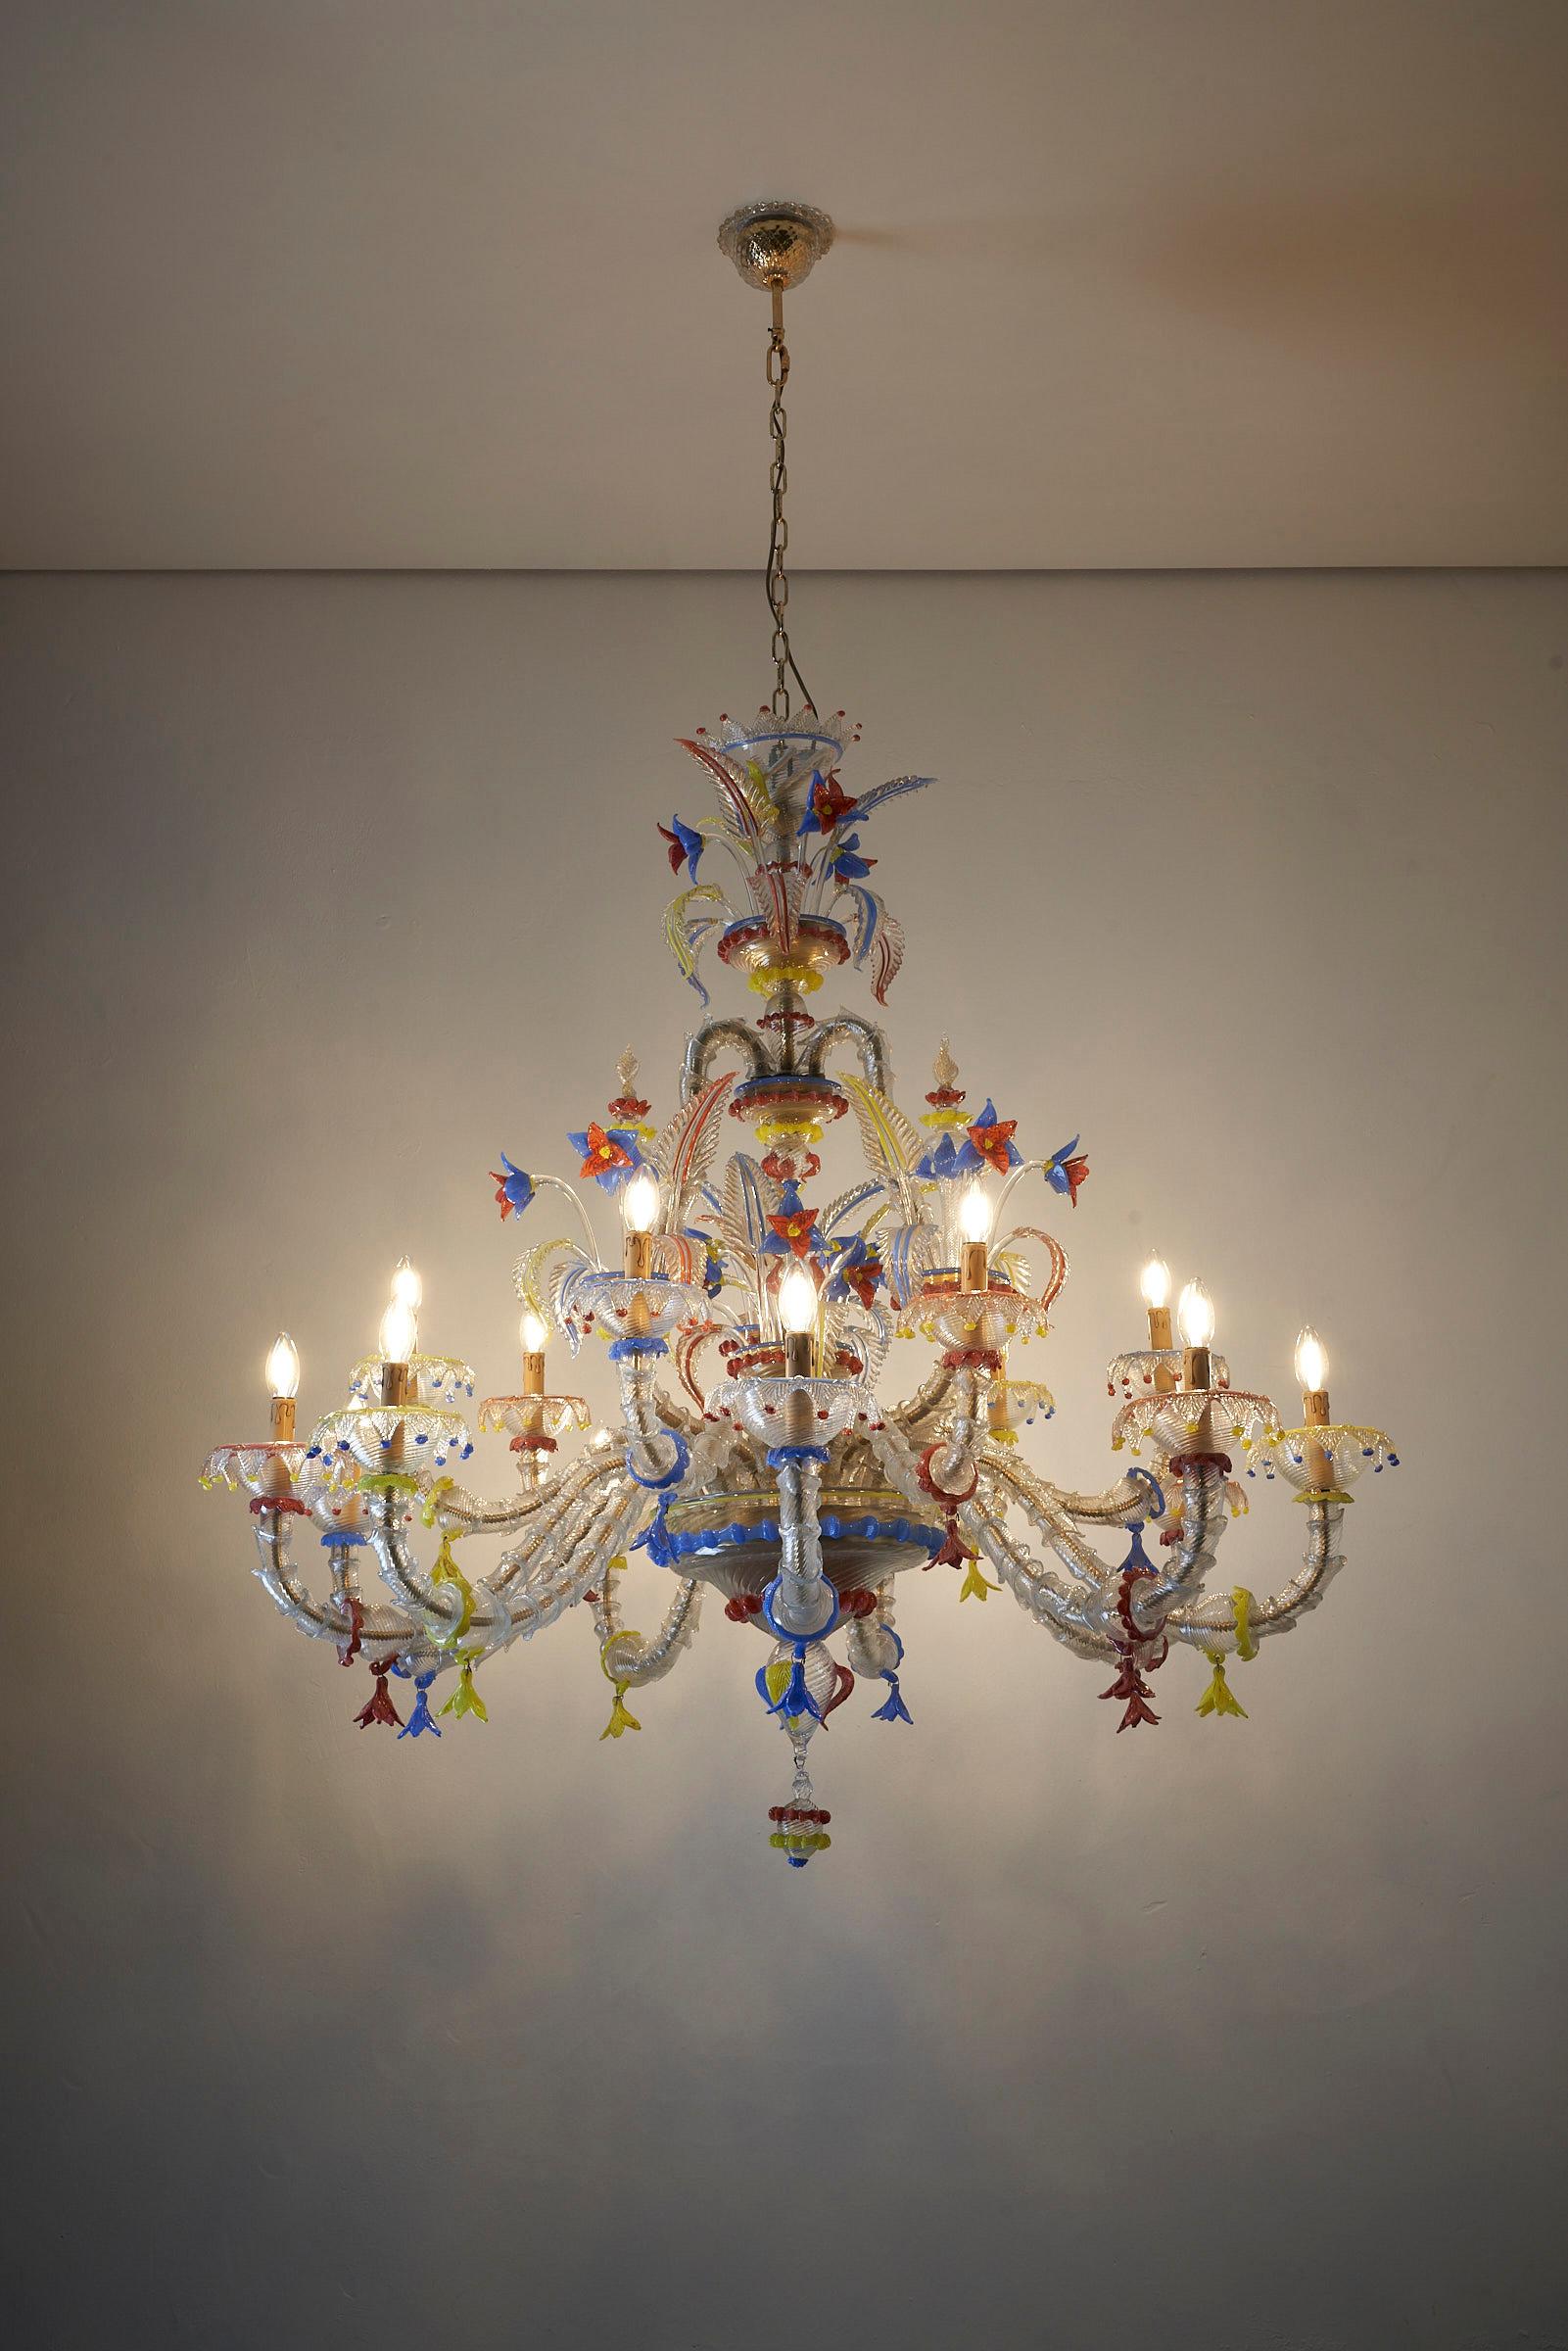 Wir stellen den atemberaubenden XL Murano Kronleuchter Multicoloured vor, ein wahres Meisterwerk venezianischer Handwerkskunst. Mit seiner Grandeur und Eleganz erregt dieser Kronleuchter Aufmerksamkeit und verleiht jedem Raum einen Hauch von